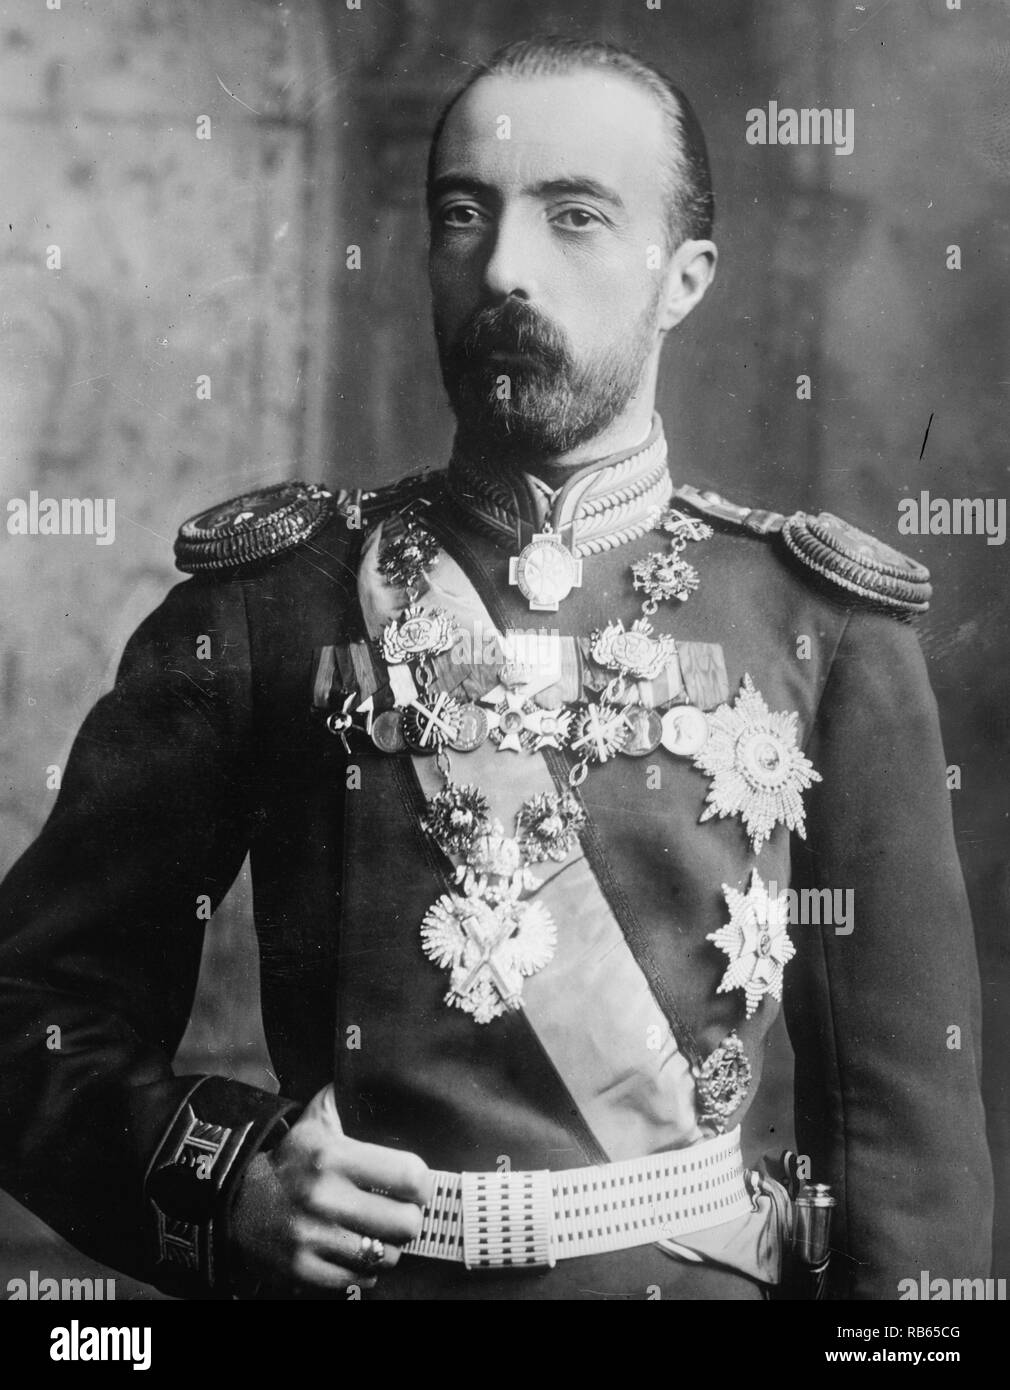 Portrait du Grand Duc Michel Alexandrovitch de Russie. Il était le plus jeune fils de l'empereur Alexandre III de Russie. Datée autour de 1910. Banque D'Images